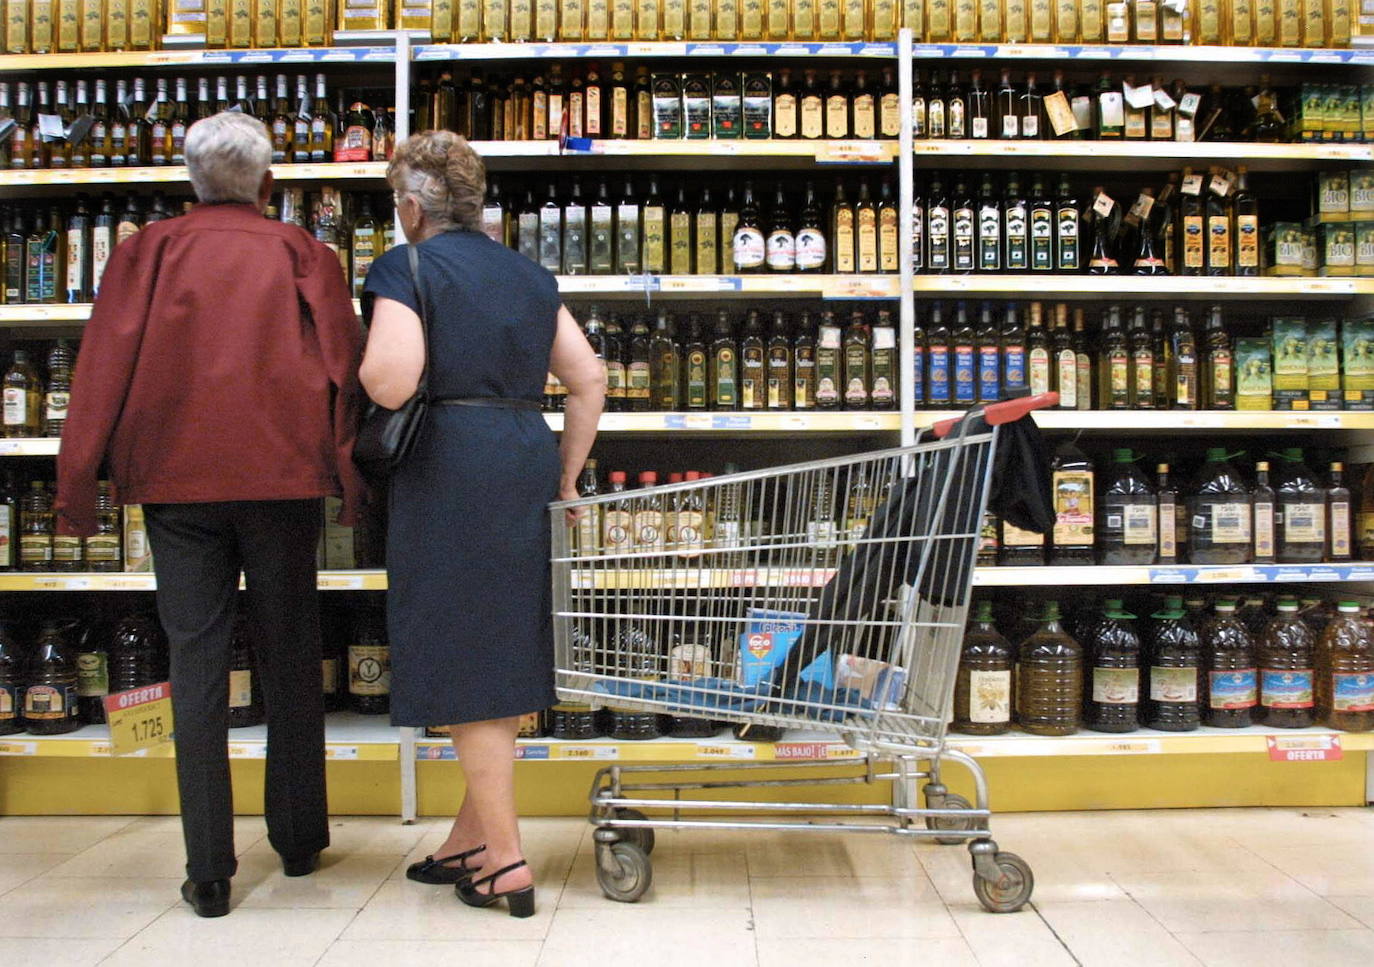 Tres trucos de los supermercados para encarecer la cesta de la compra sin que se entere el cliente